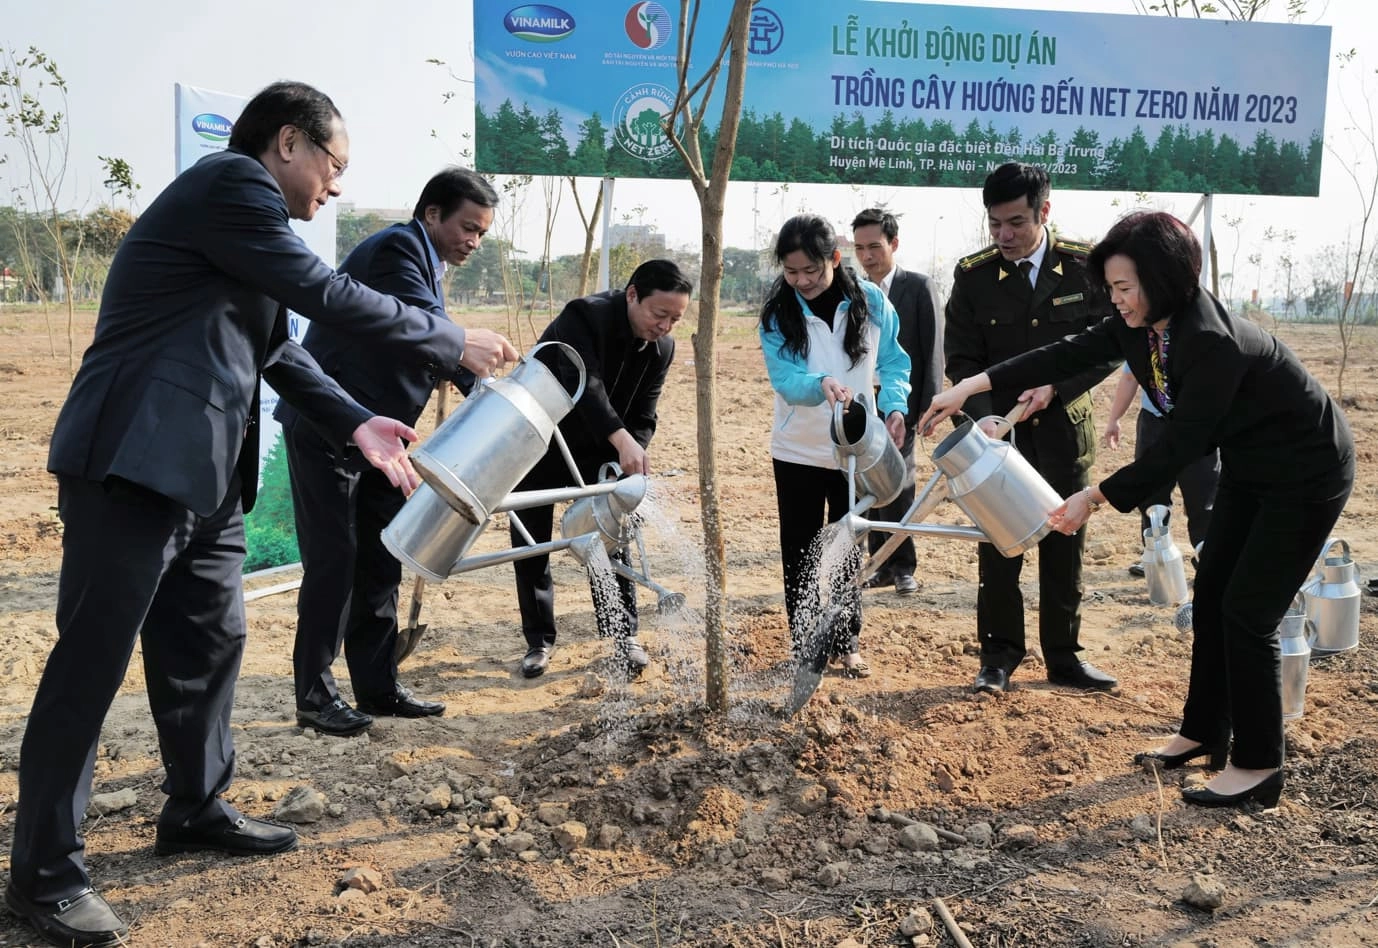 Các lãnh đạo Vinamilk khởi động dự án trồng cây hướng tới Net Zero tại Hà Nội, tháng 2 vừa qua.